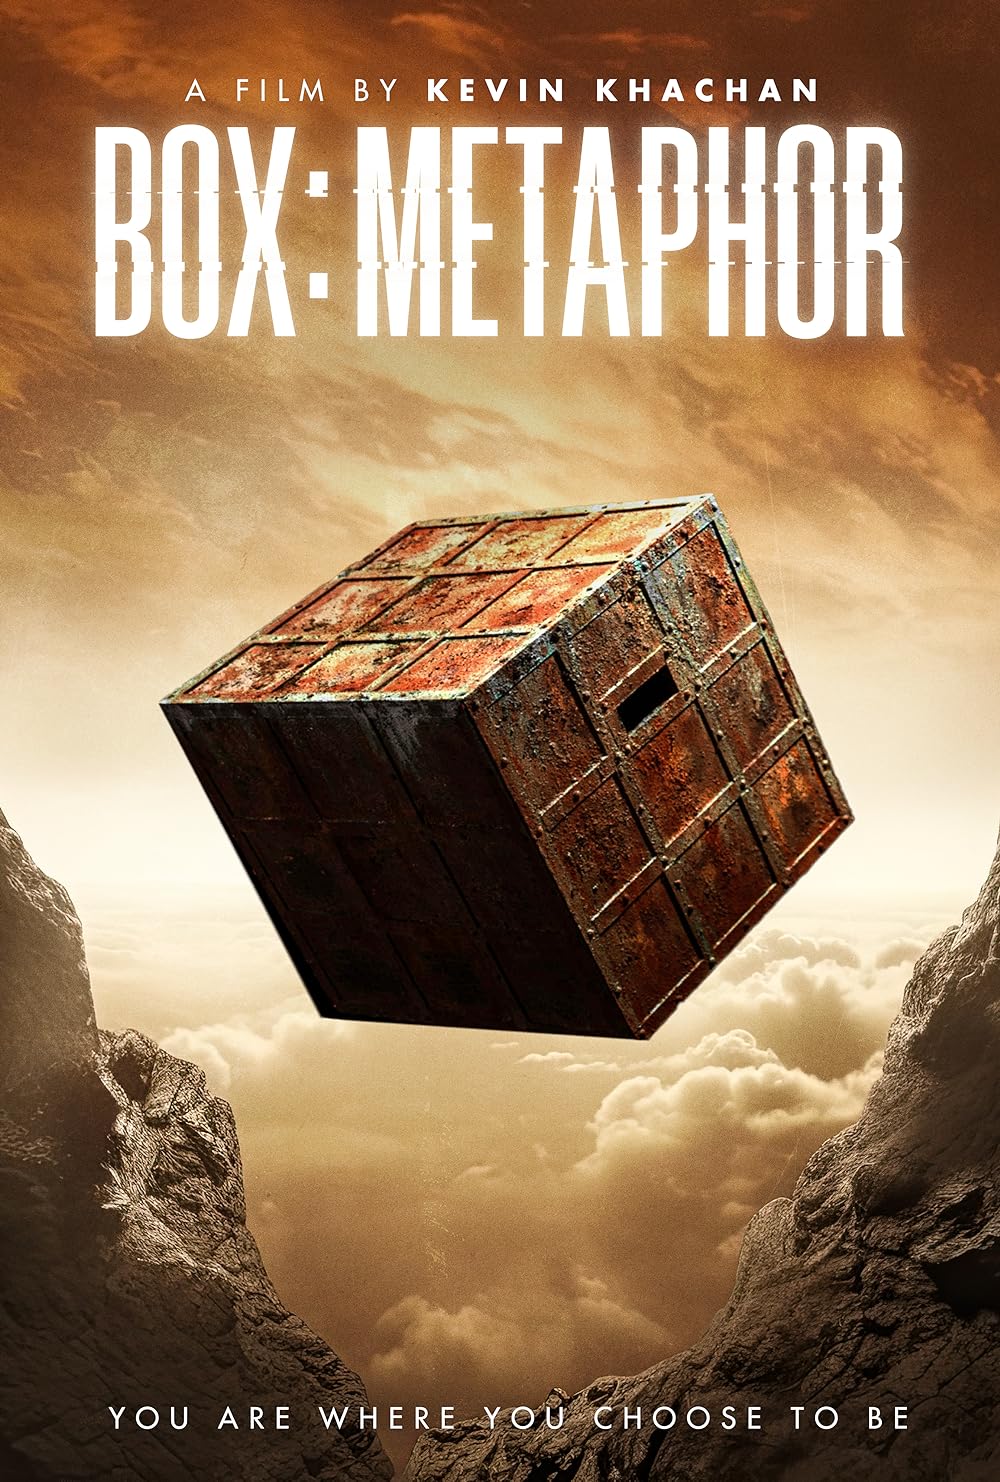 Box: Metaphor poster